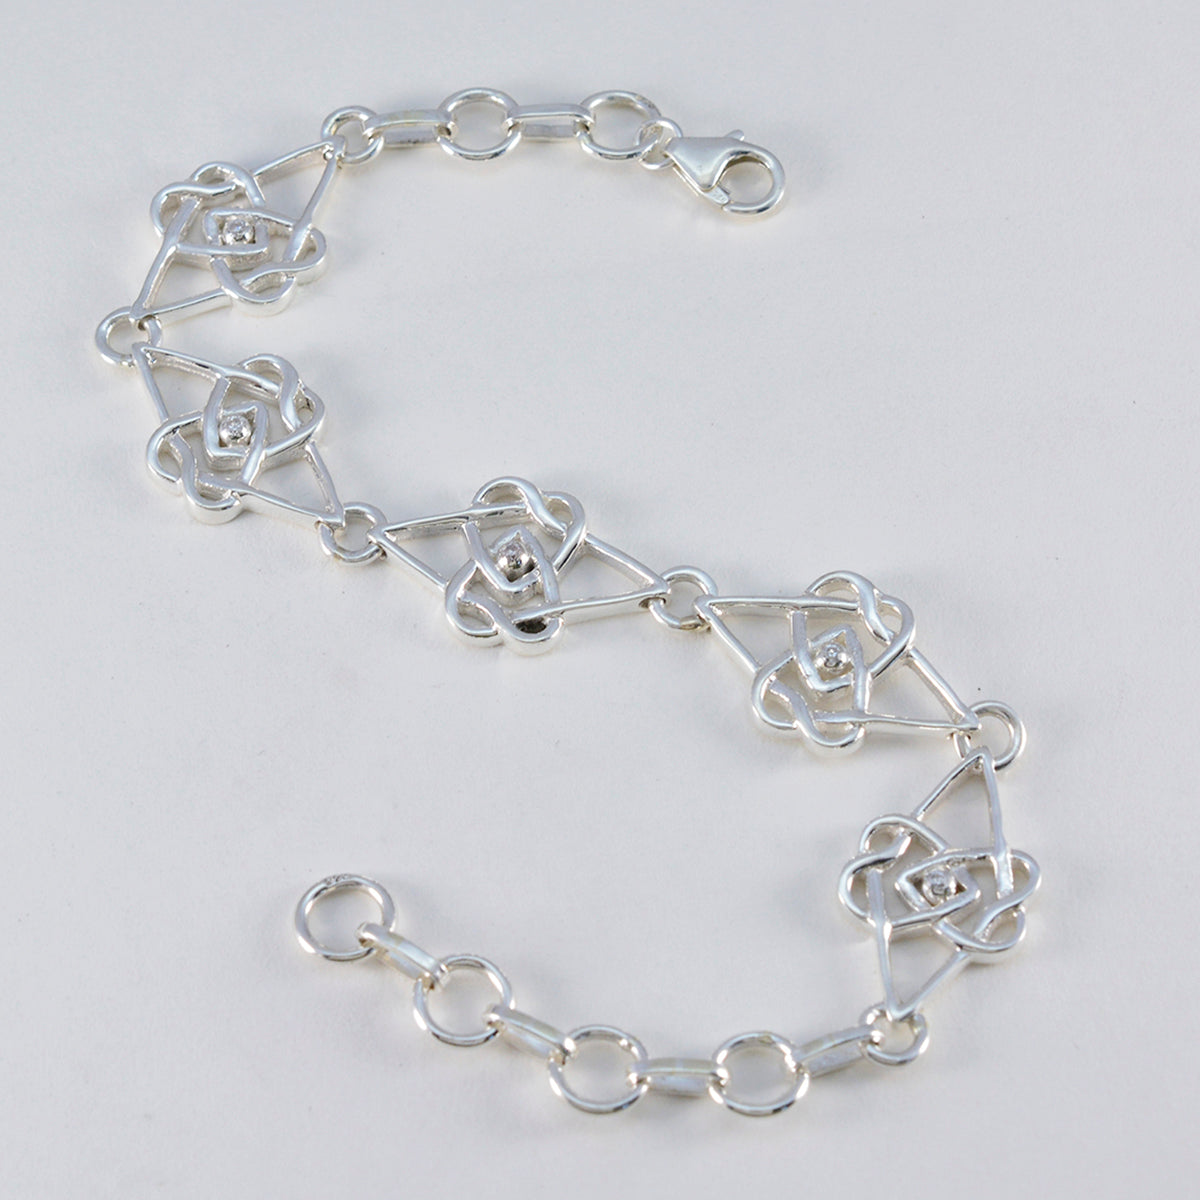 riyo в количестве 925 пробы серебряный браслет для женщин белый браслет с цирконием безель браслет с рыбным крючком браслет размер l 6-8,5 дюймов.